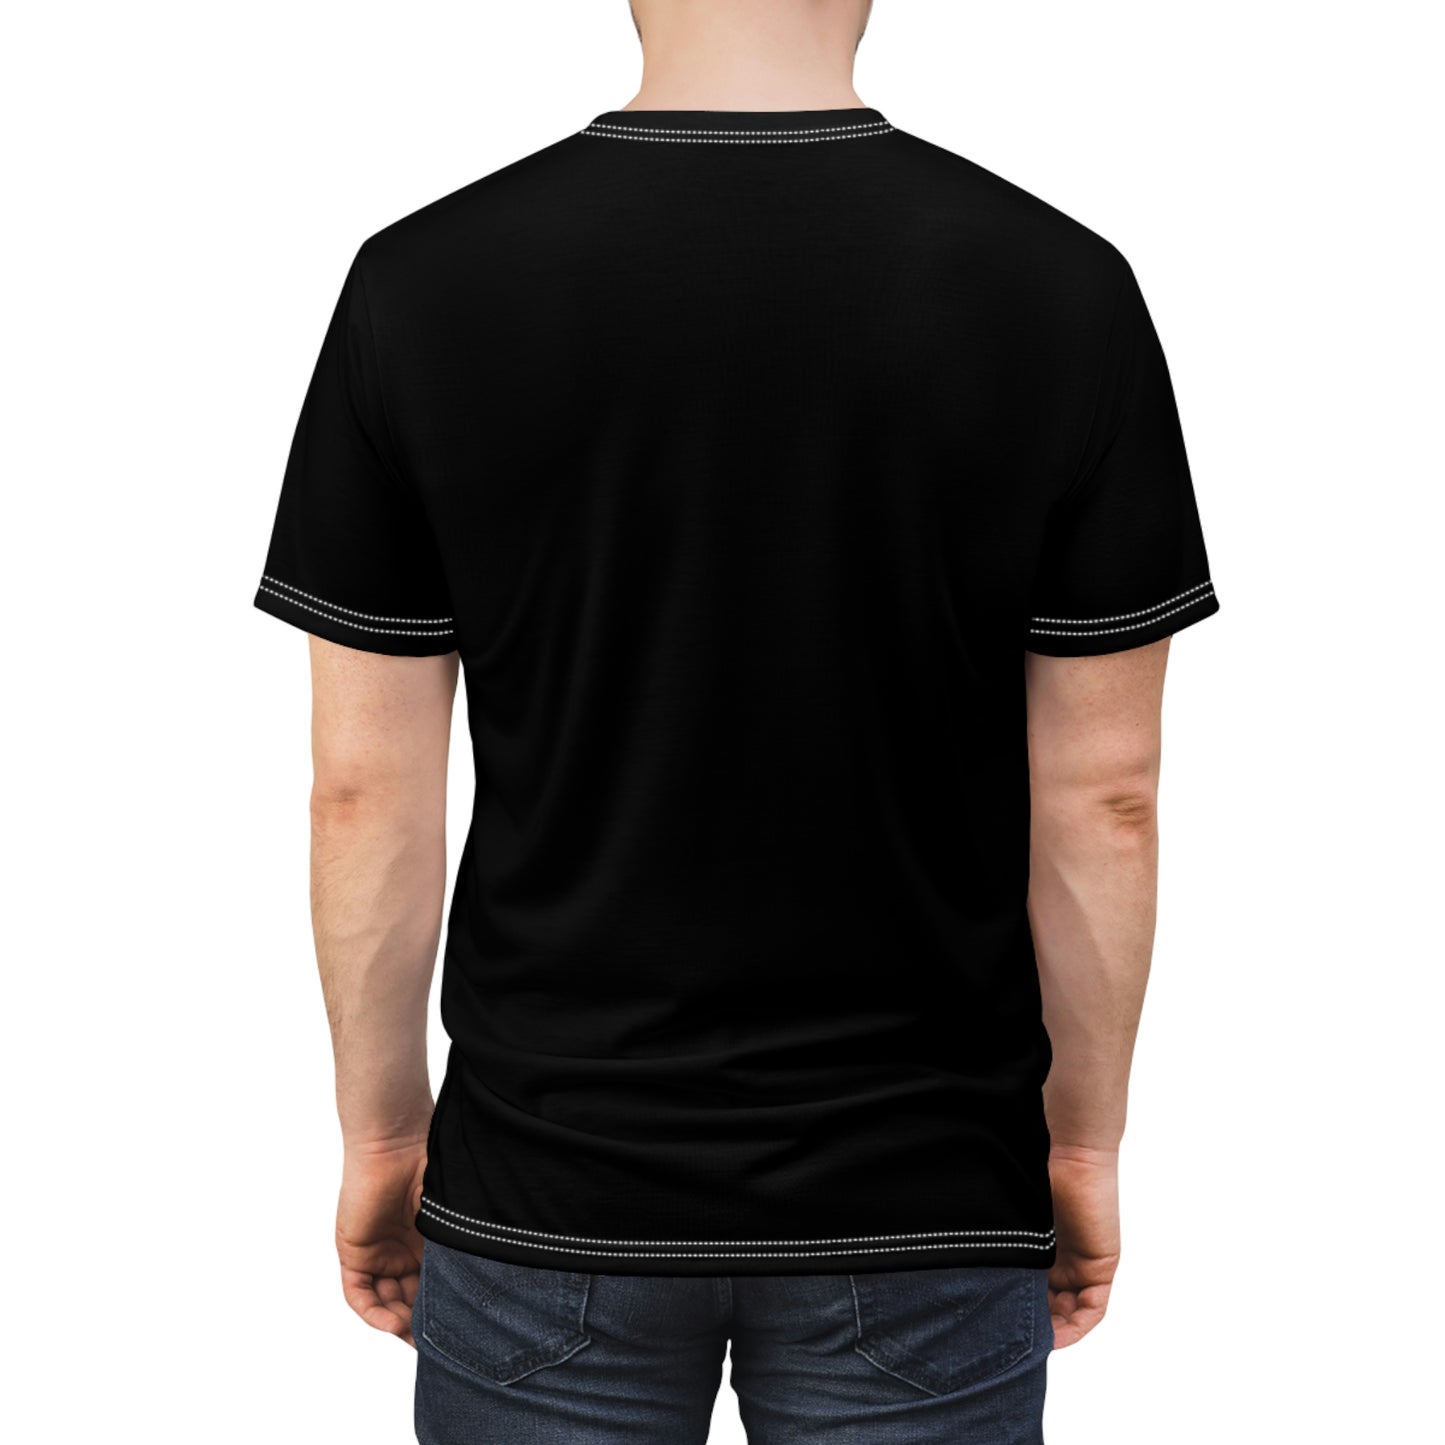 Hidden Steel - Unisex All-Over Print Cut & Sew T-Shirt